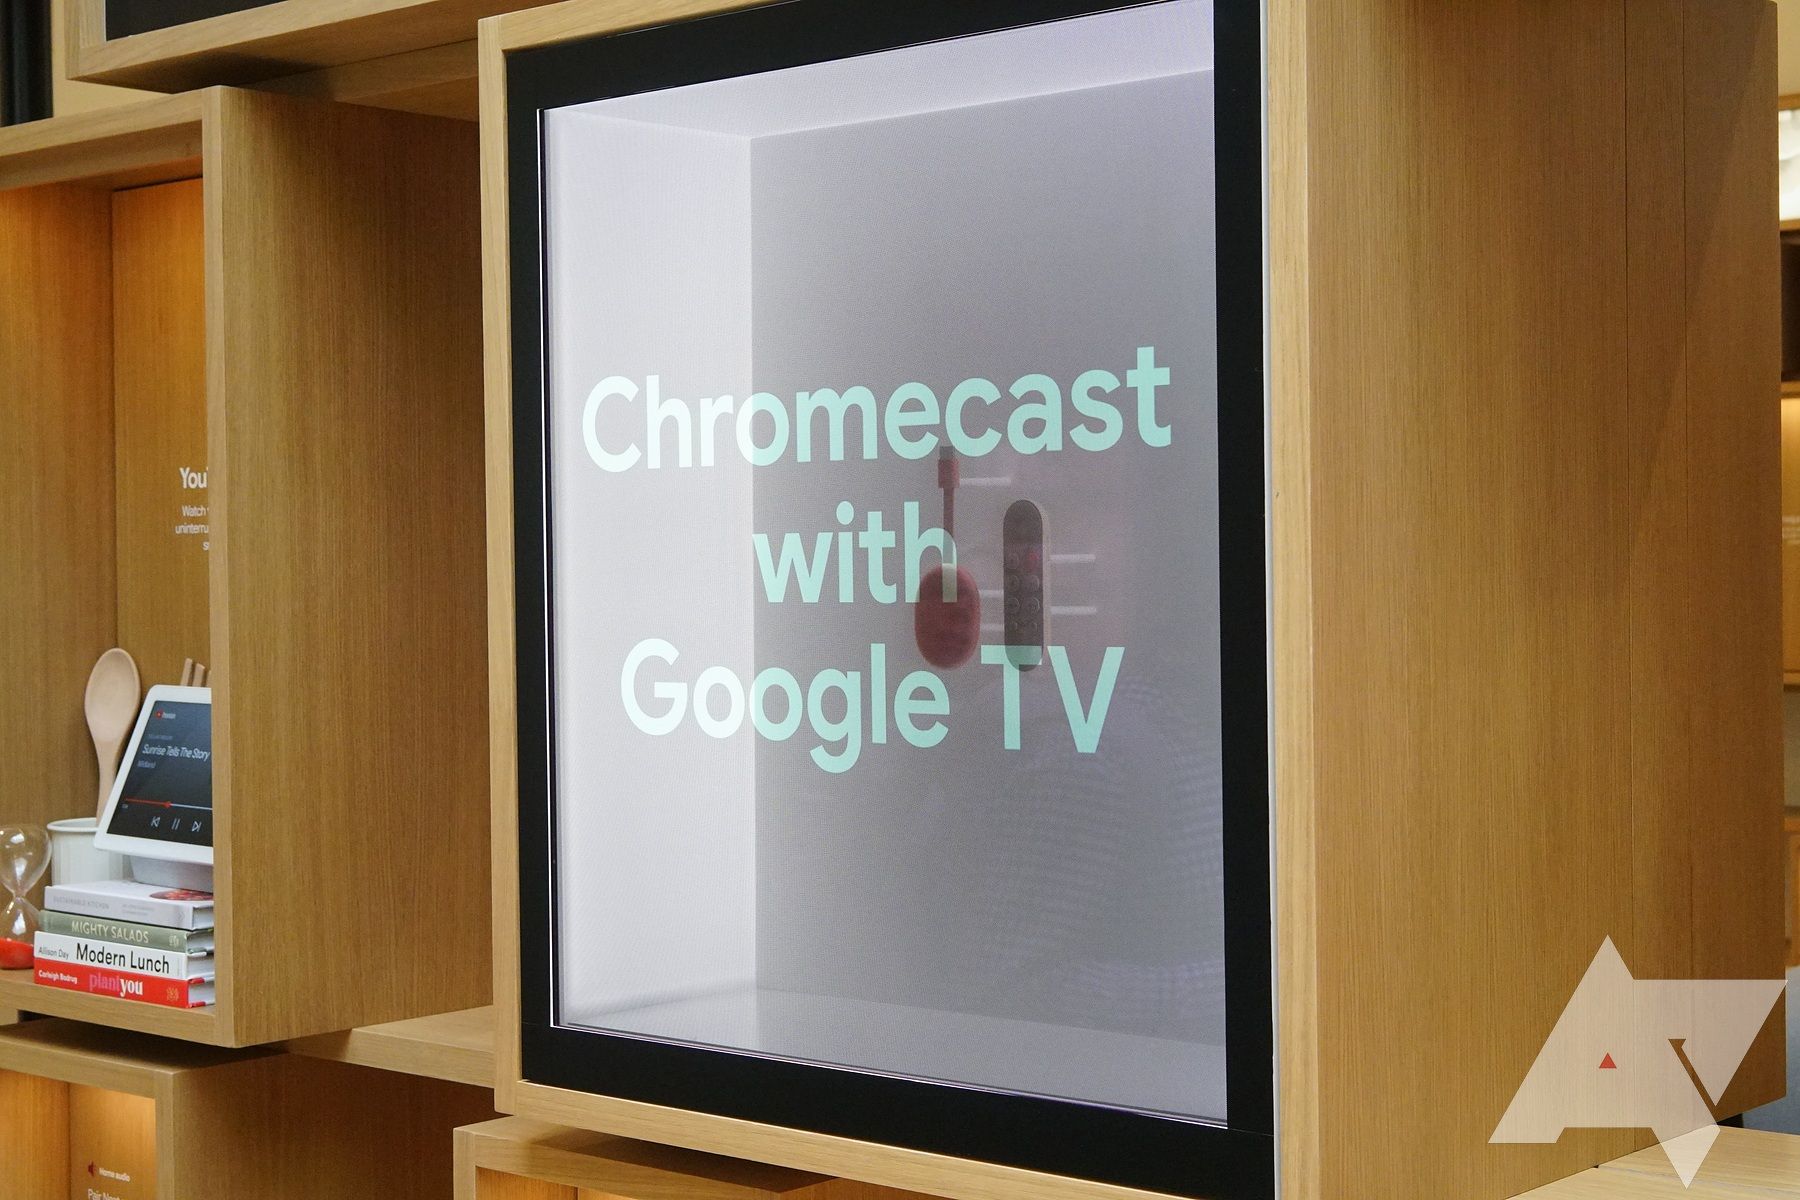 A loja do Google mostrando um Chromecast com Google TV em uma tela transparente